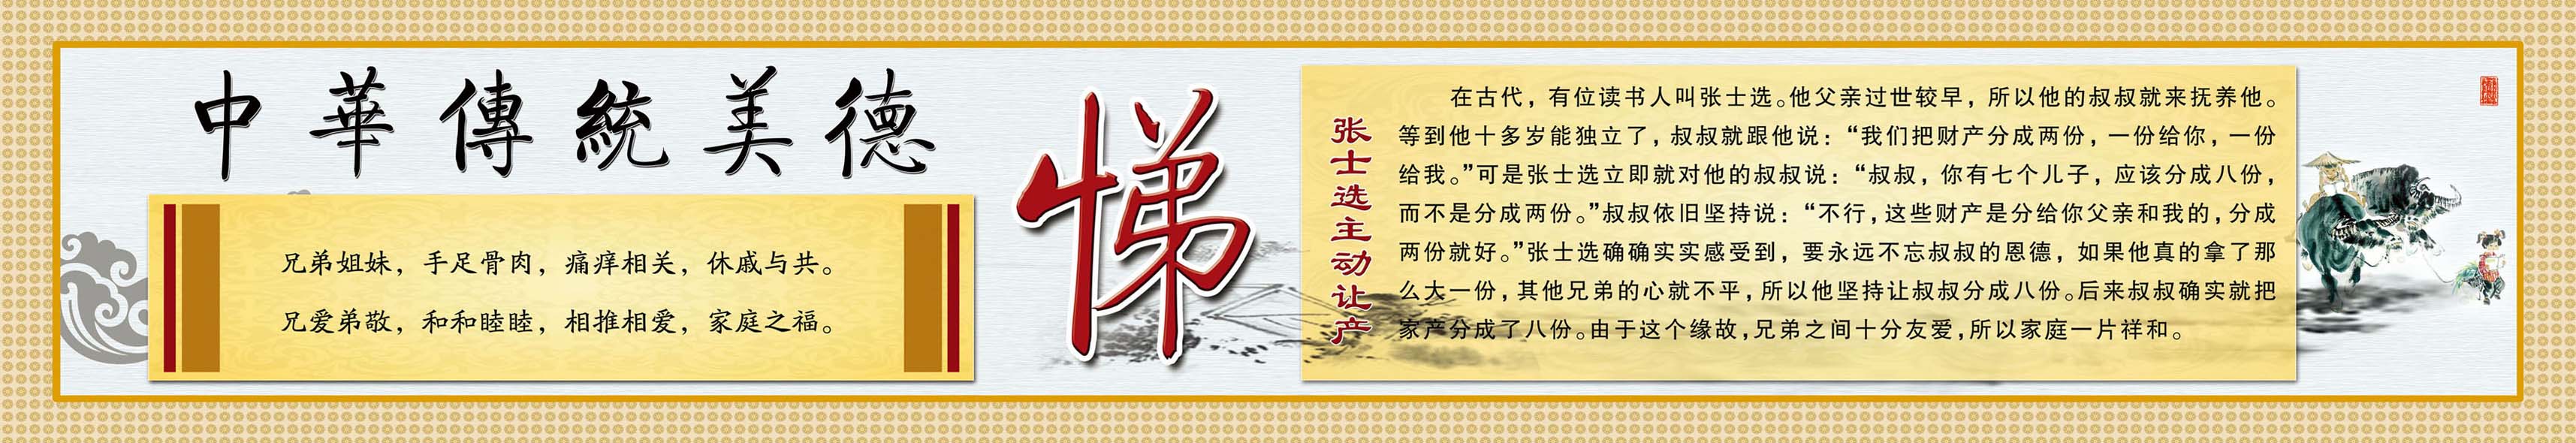 638画布海报展板喷绘素材贴纸11中华传统美德人生八德悌